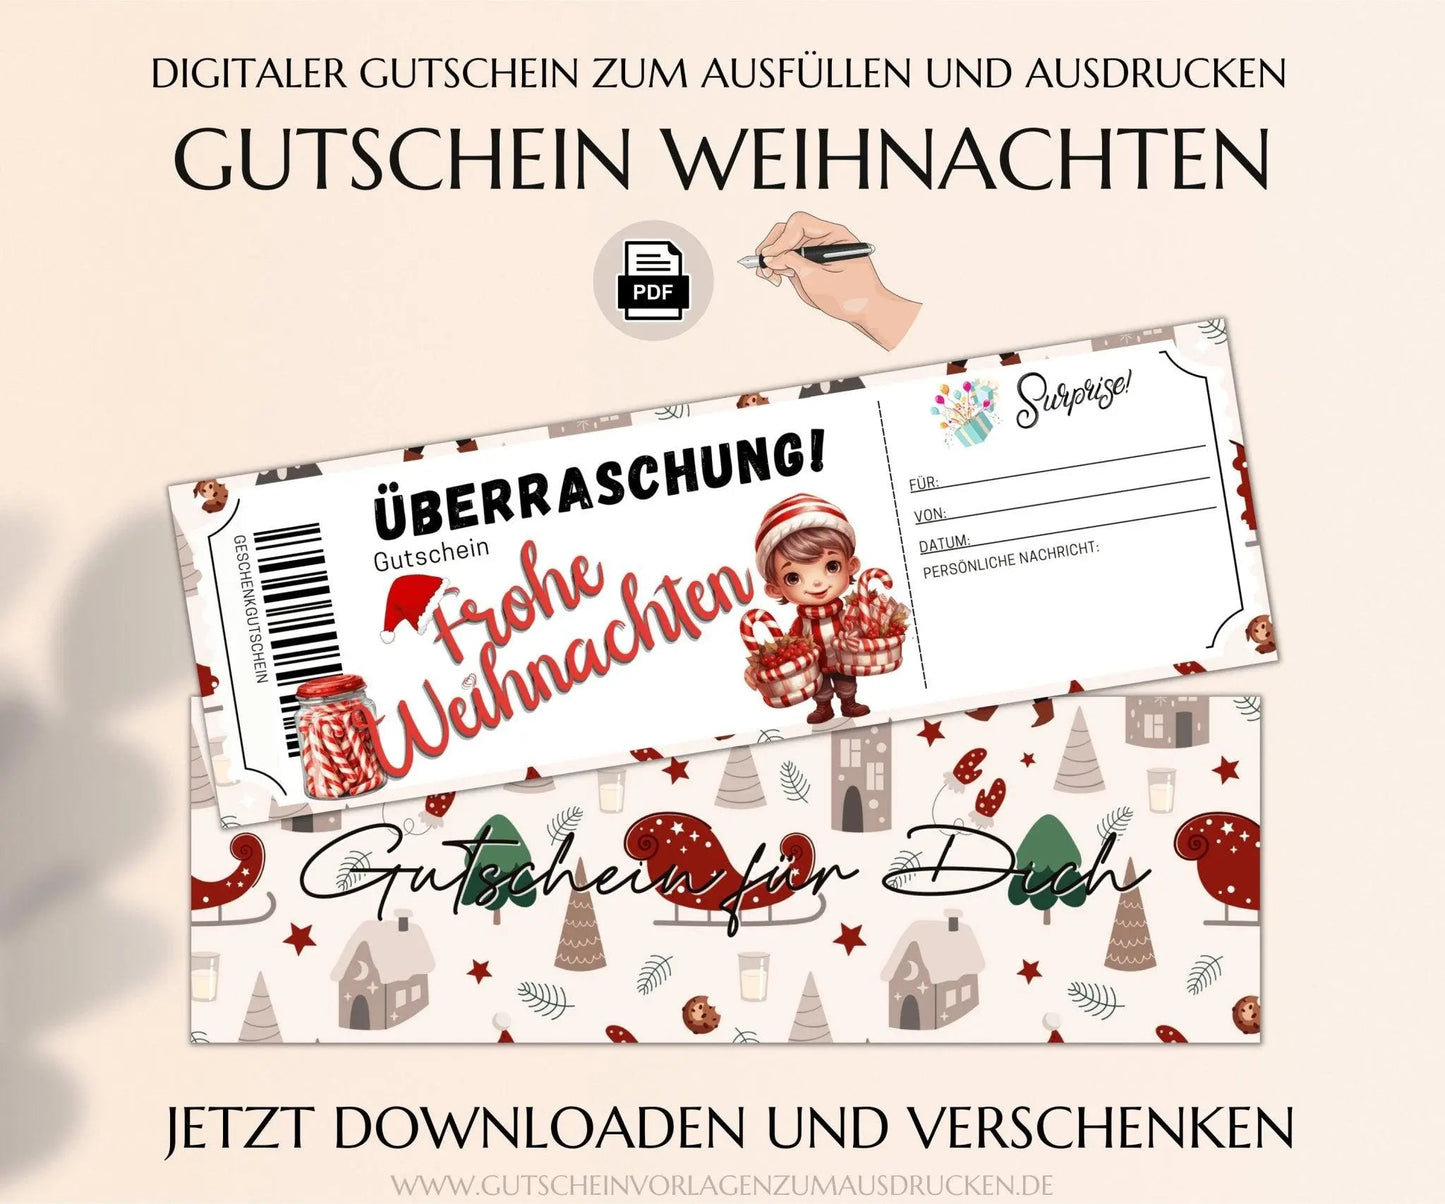 Weihnachten Gutscheinvorlage zum Ausdrucken | Gutschein Vorlage PDF | Gutschein kreativ verpacken | JSK294 - JSKDesignStudio.de